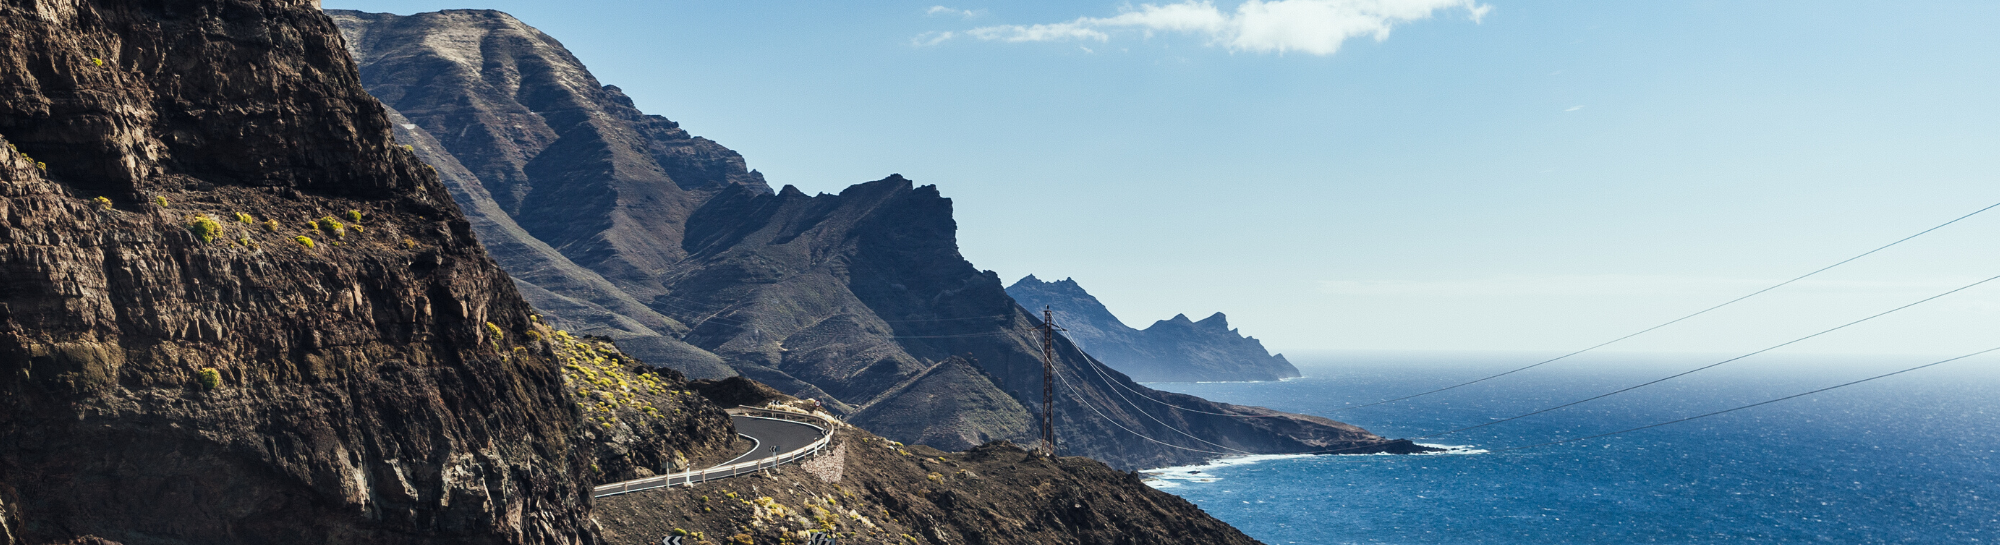 Envíos a Canarias: Todo lo que debes saber sobre aduanas y otras cosas